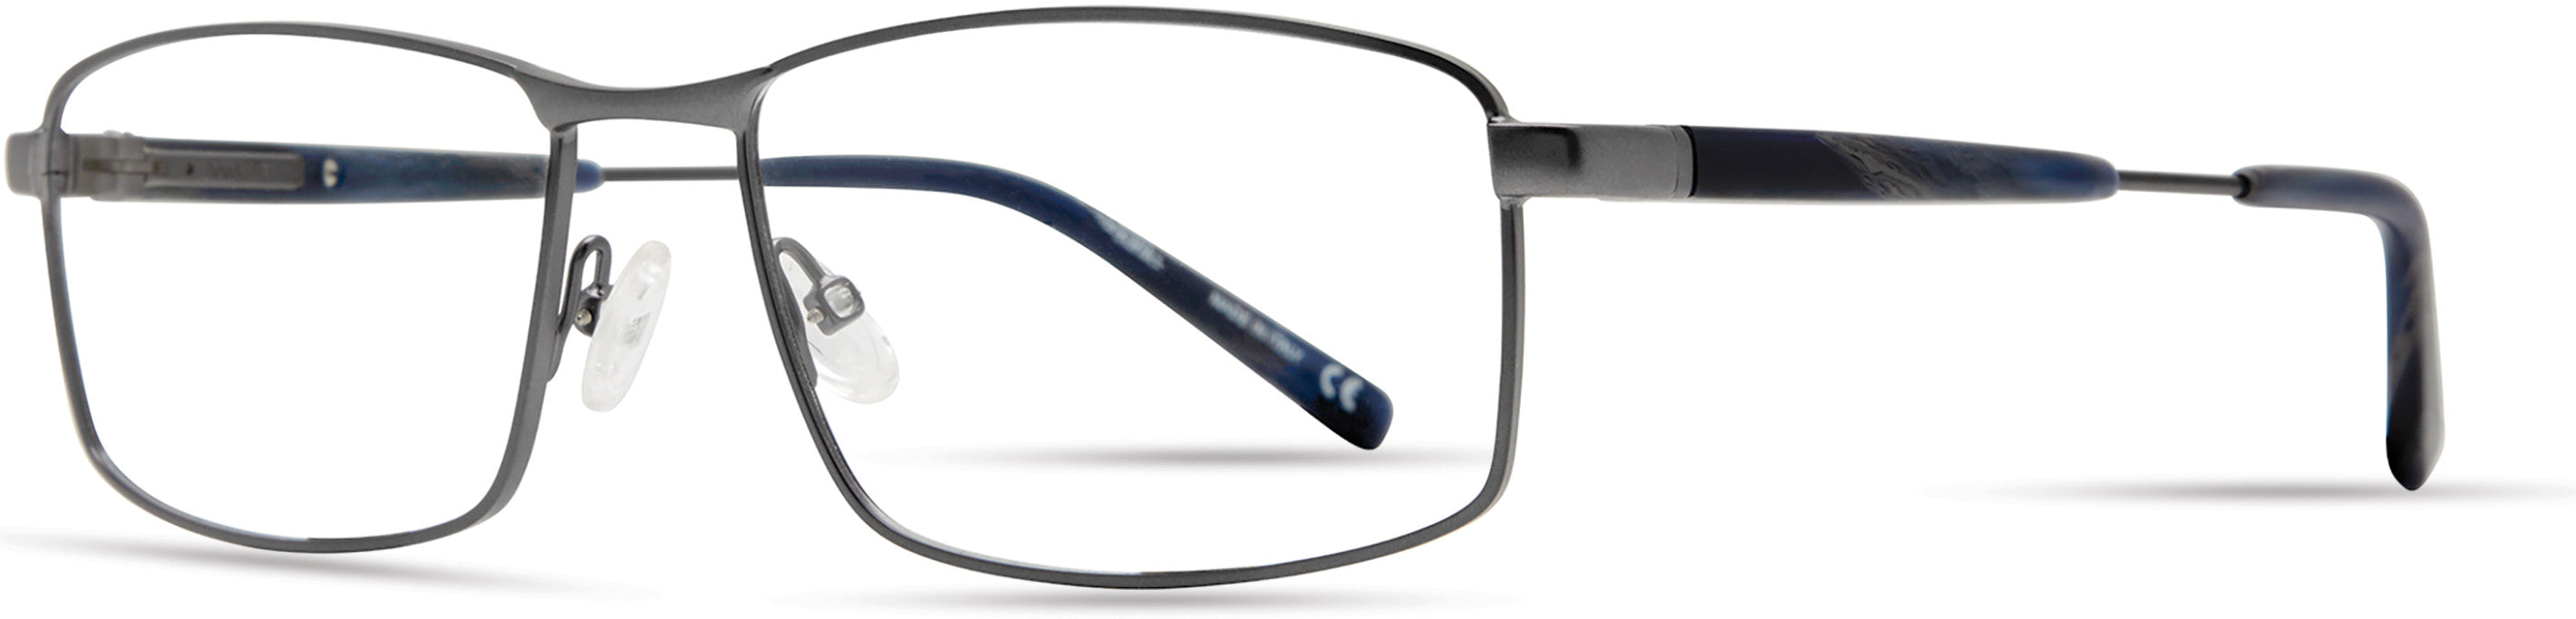  Elasta 7235 Rectangular Eyeglasses 0HWJ-0HWJ  Dark Gray (00 Demo Lens)